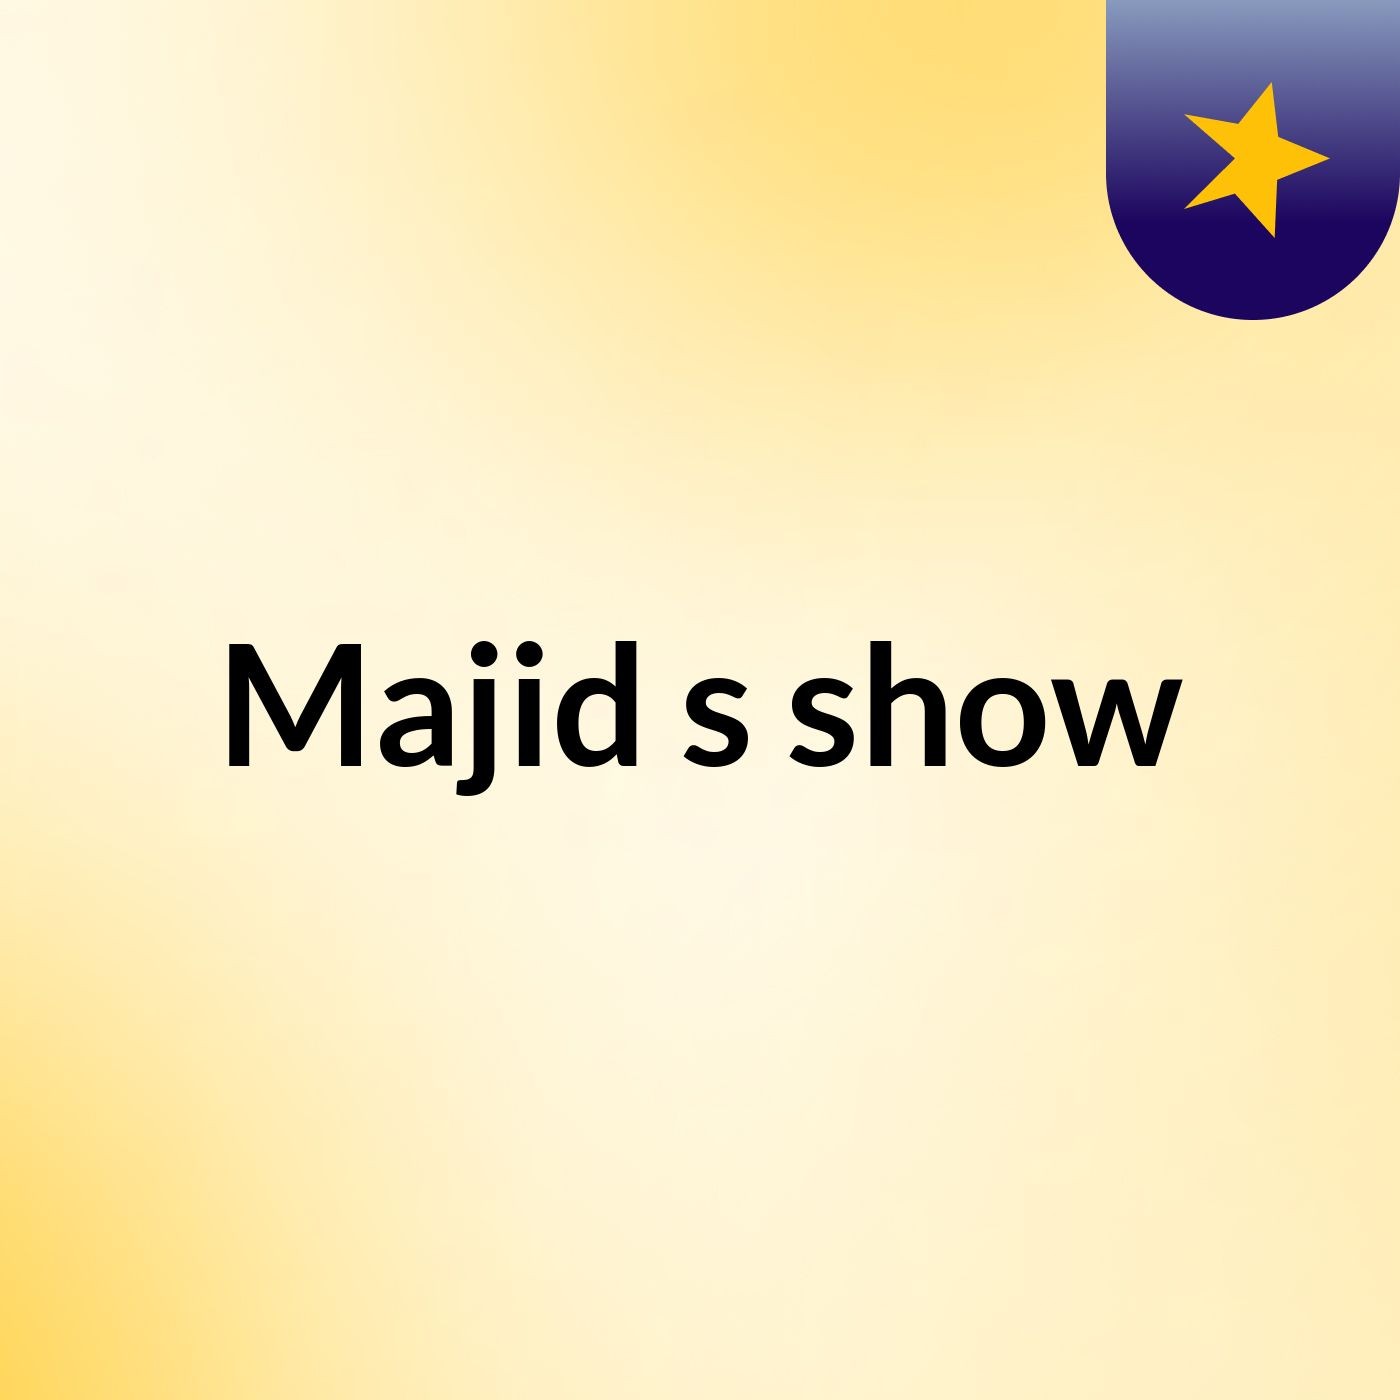 Majid's show